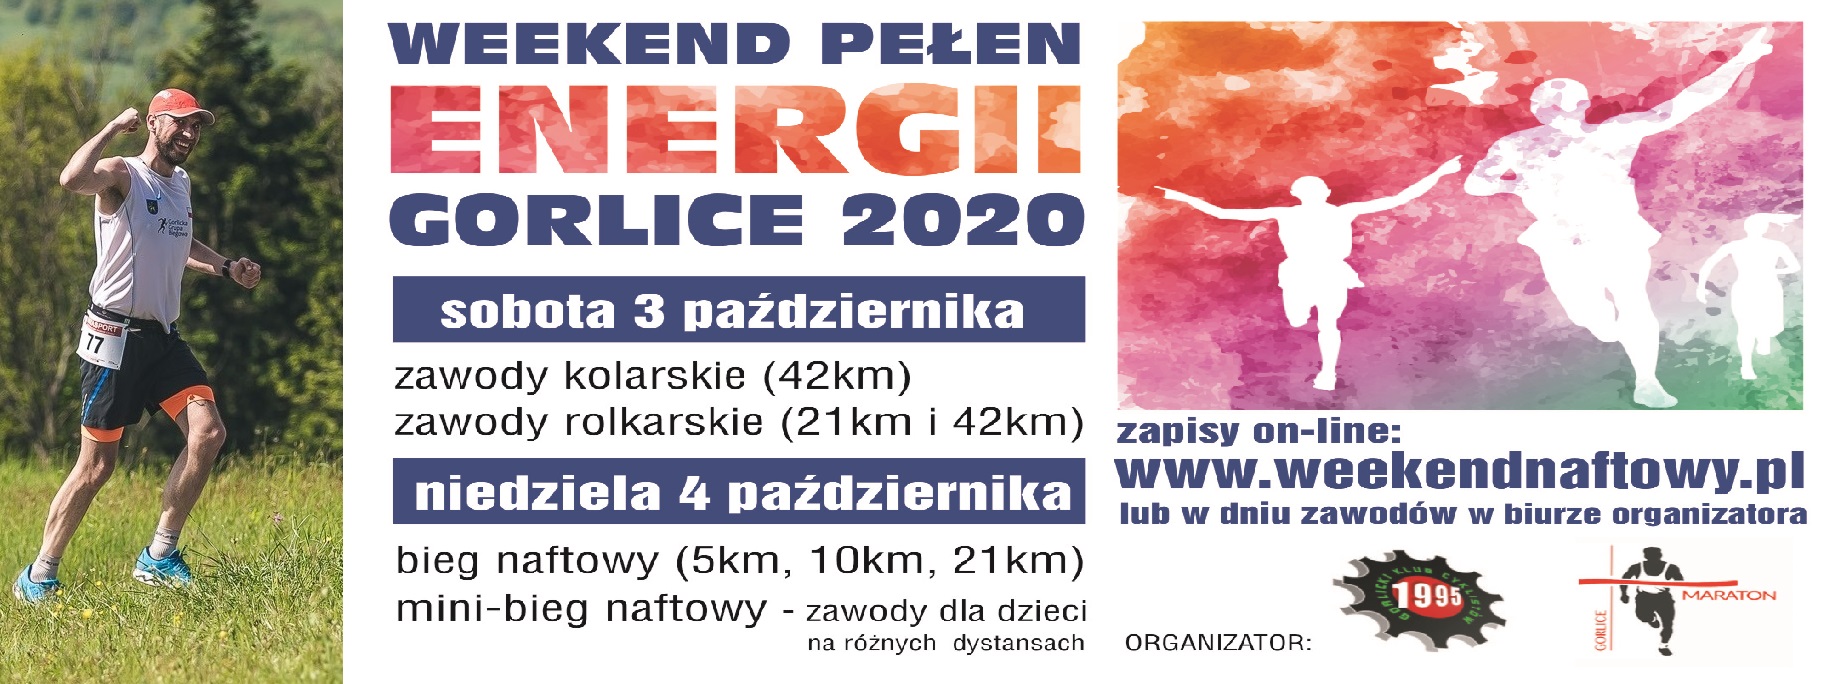 Weekend Pełen Energii 2020